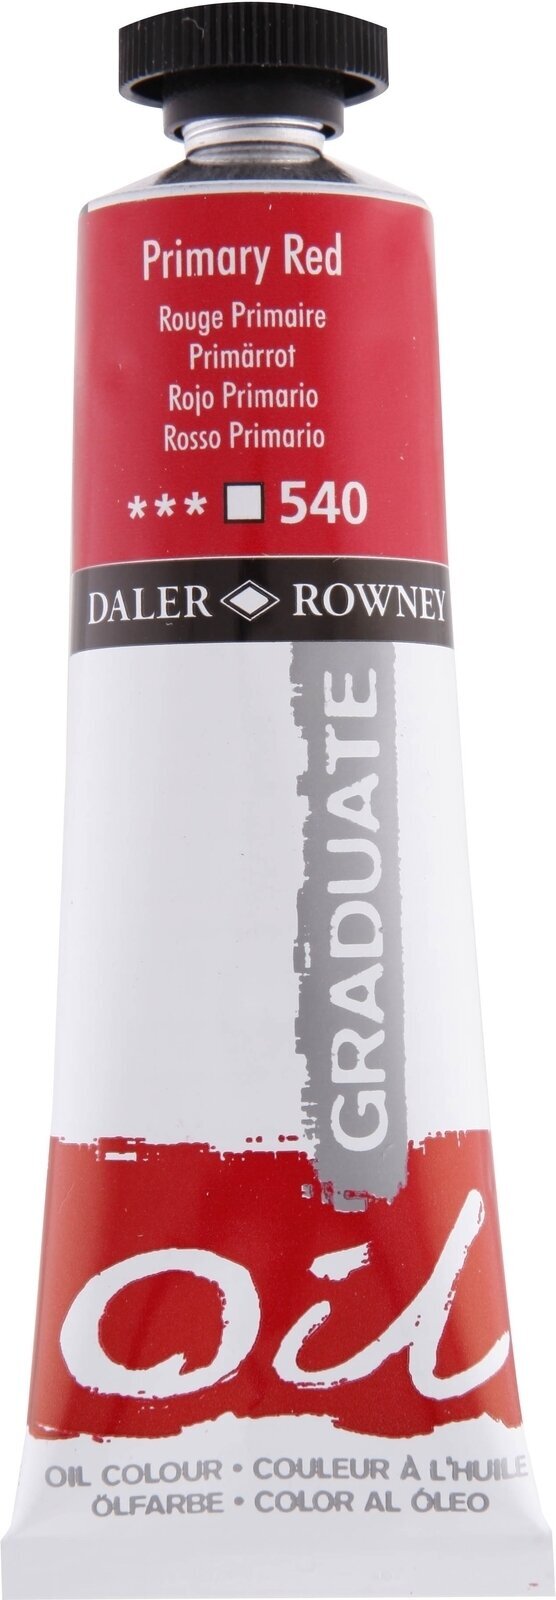 Oliefarve Daler Rowney Graduate Oliemaling Primary Red 38 ml 1 stk.